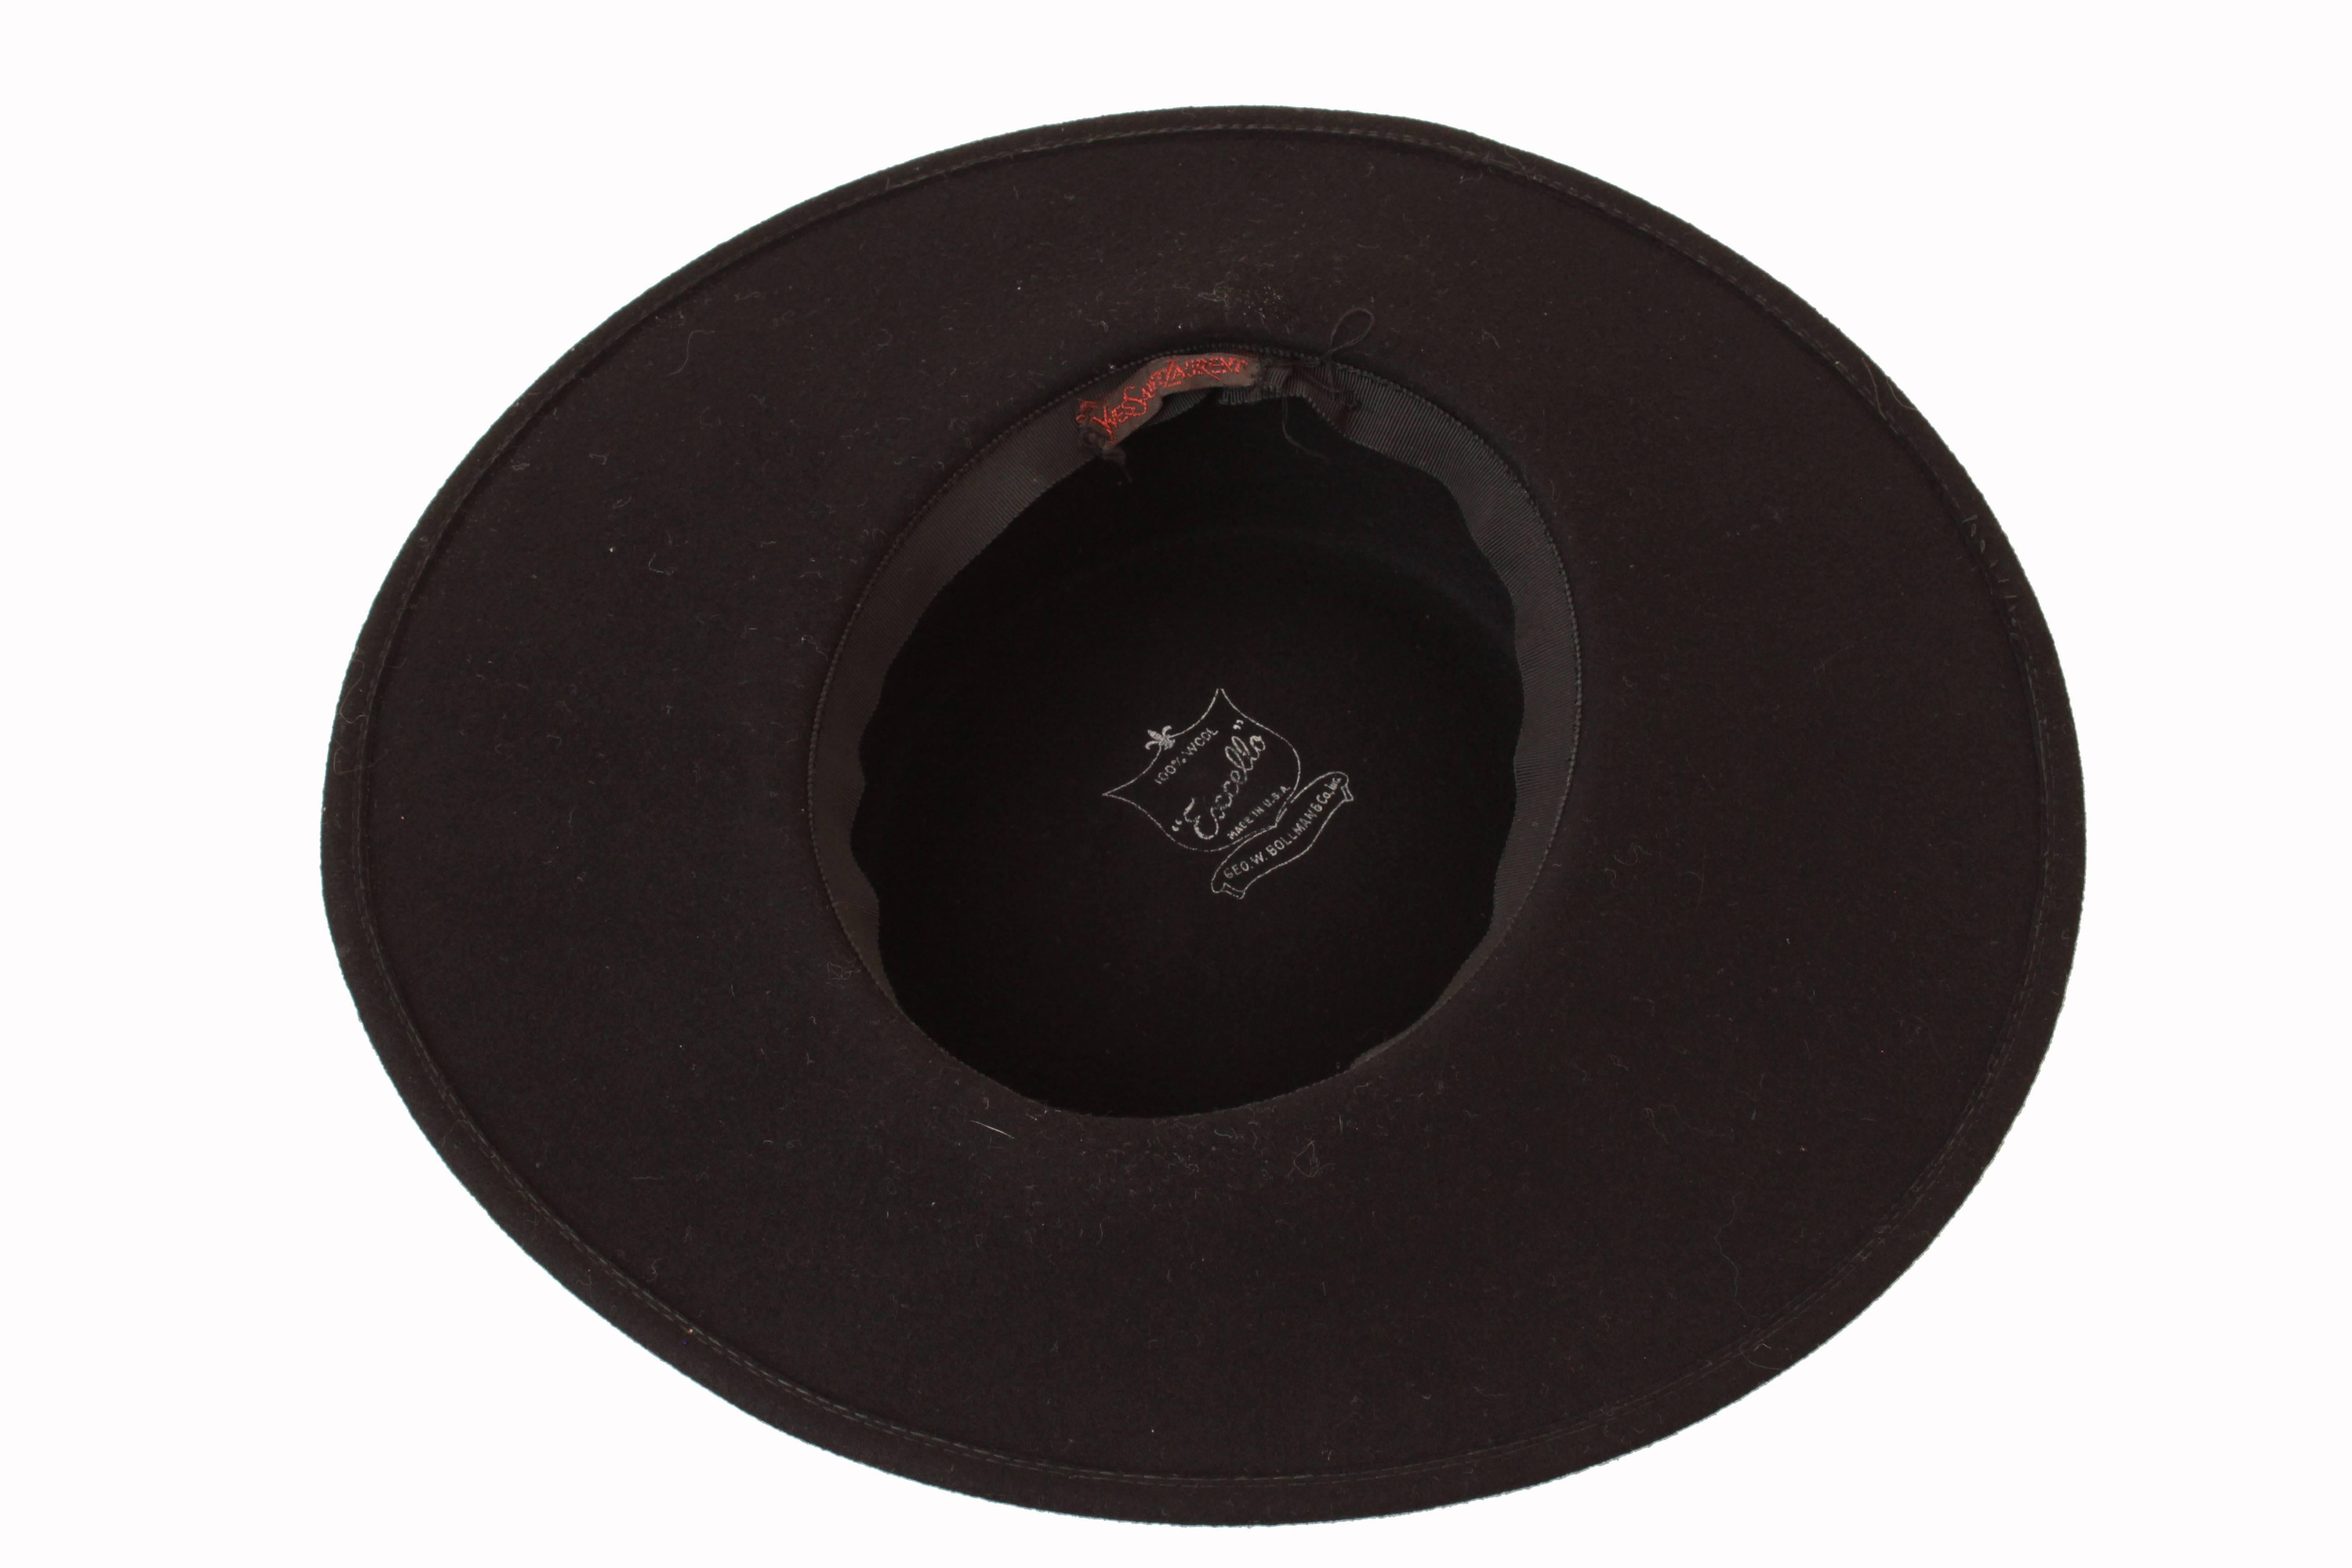 70s Yves Saint Laurent Wide Brim Hat Black Wool by Bollman Hat Co Sz S 3